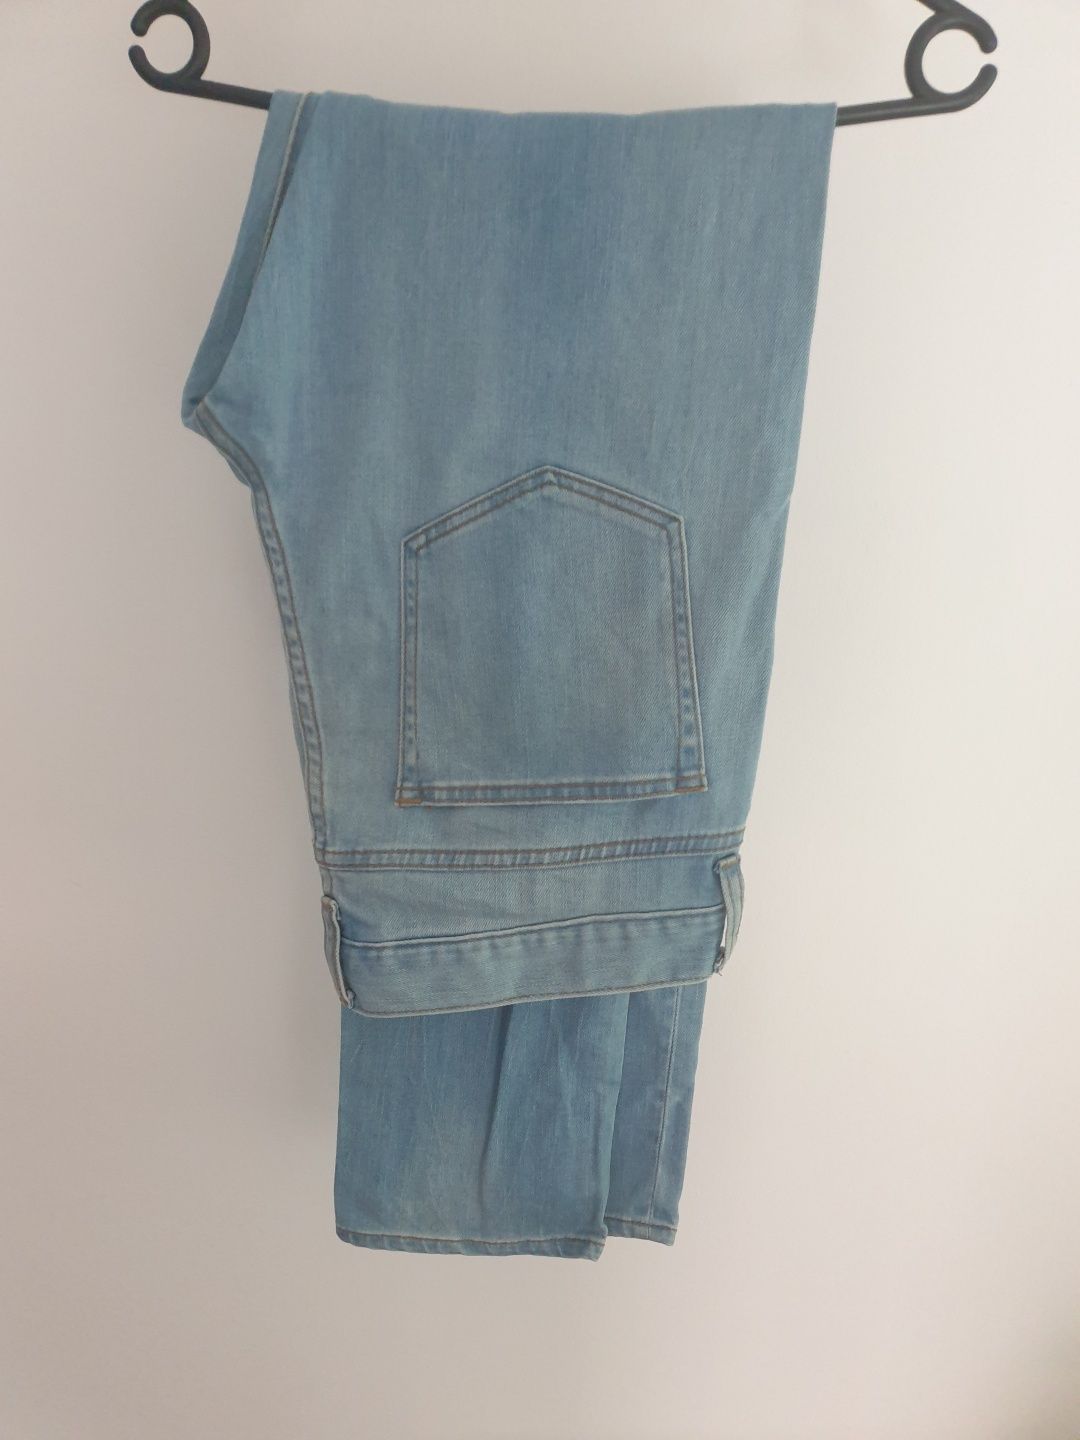 Spodnie meskie M jeansy długie biodrowki H&M